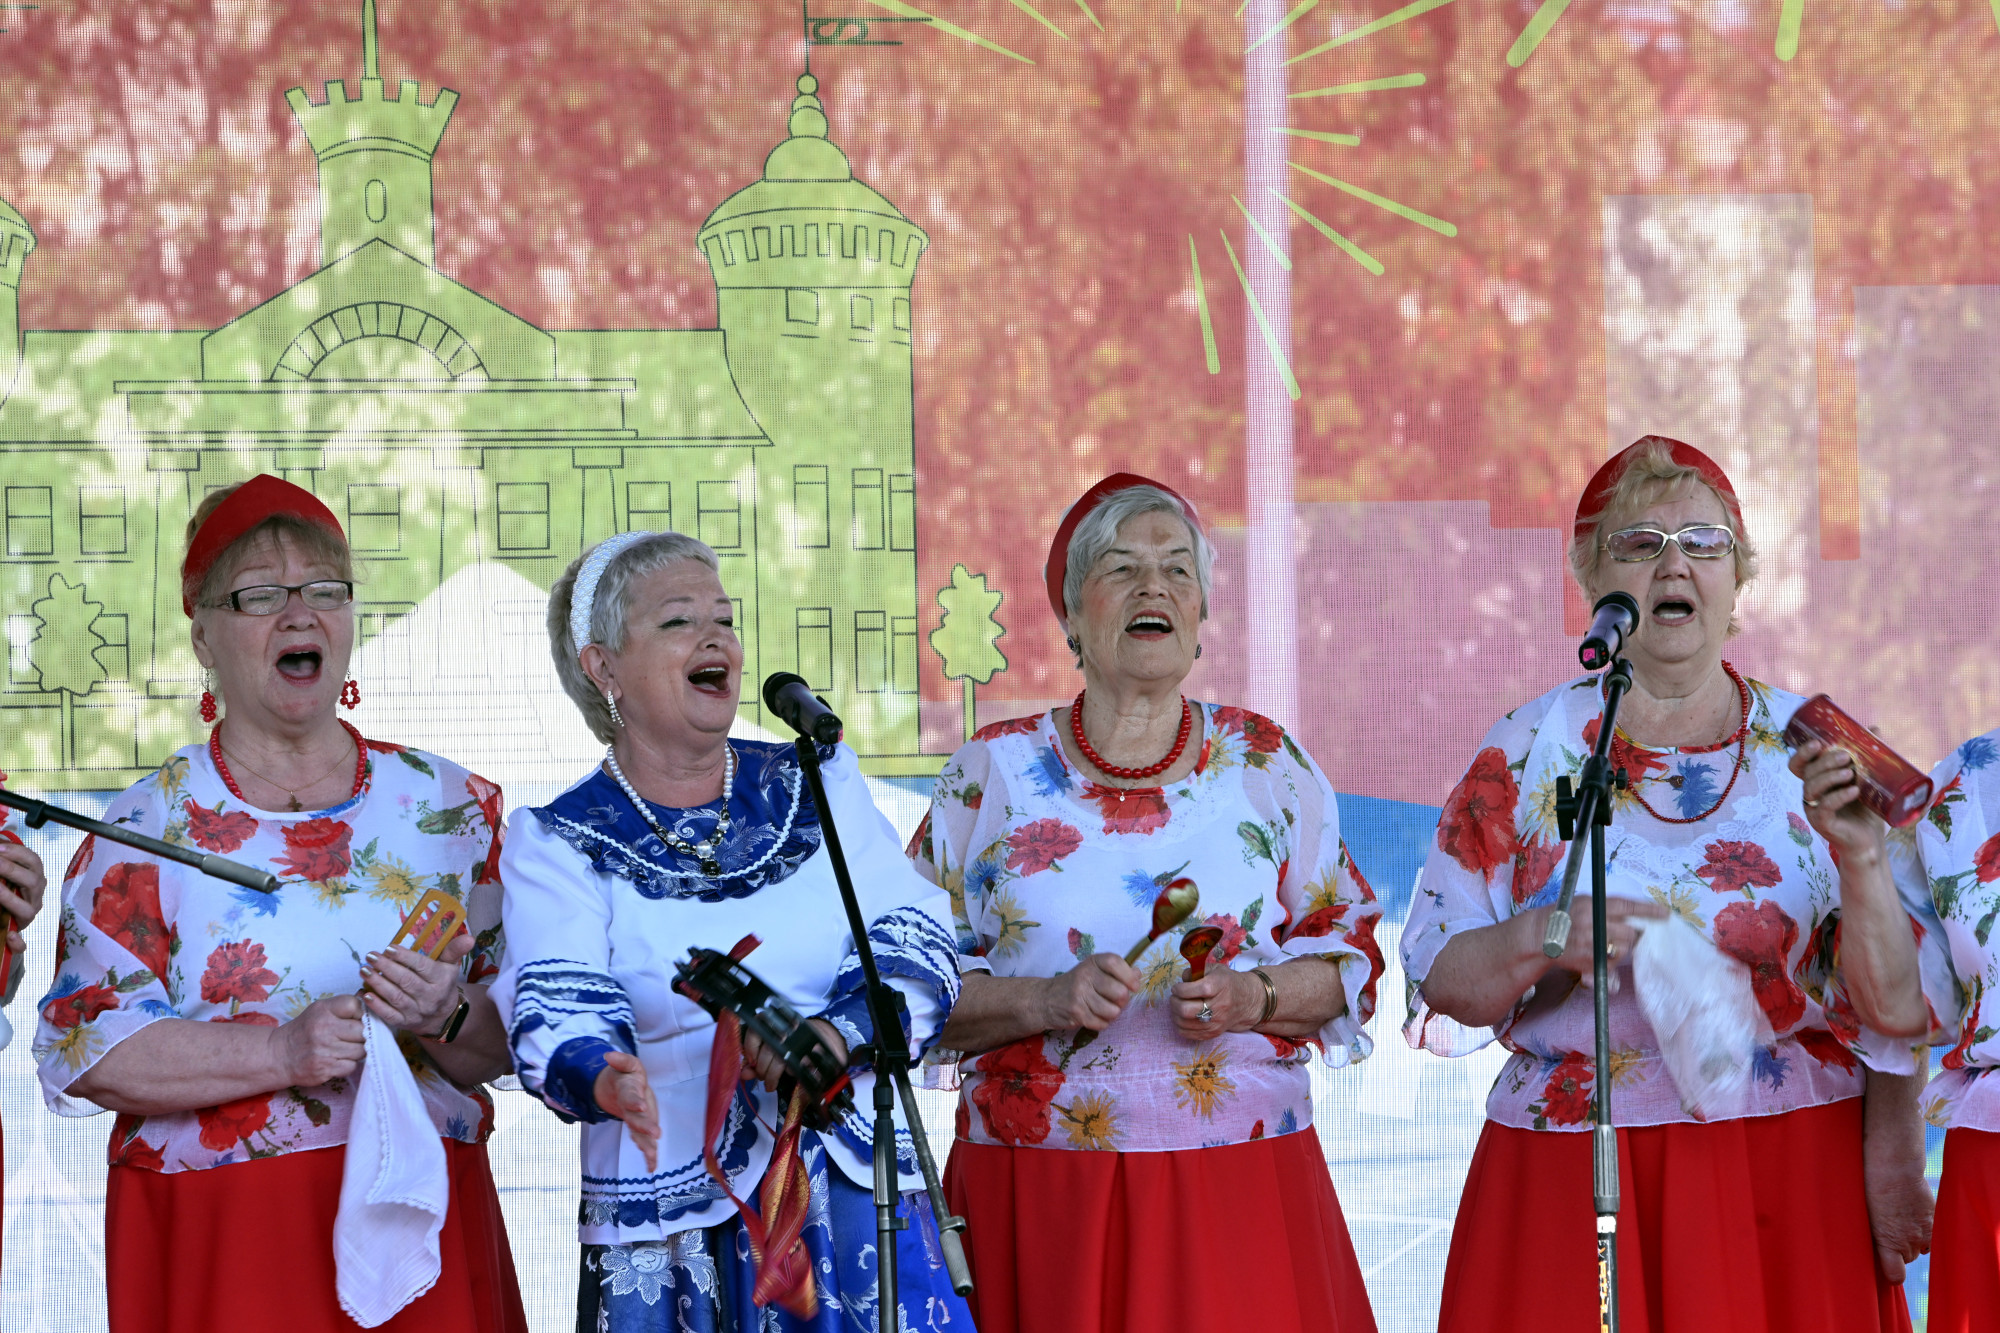 день посёлка Парголово, концерт на свежем воздухе, вокально-хоровой коллектив "Добрососеди"